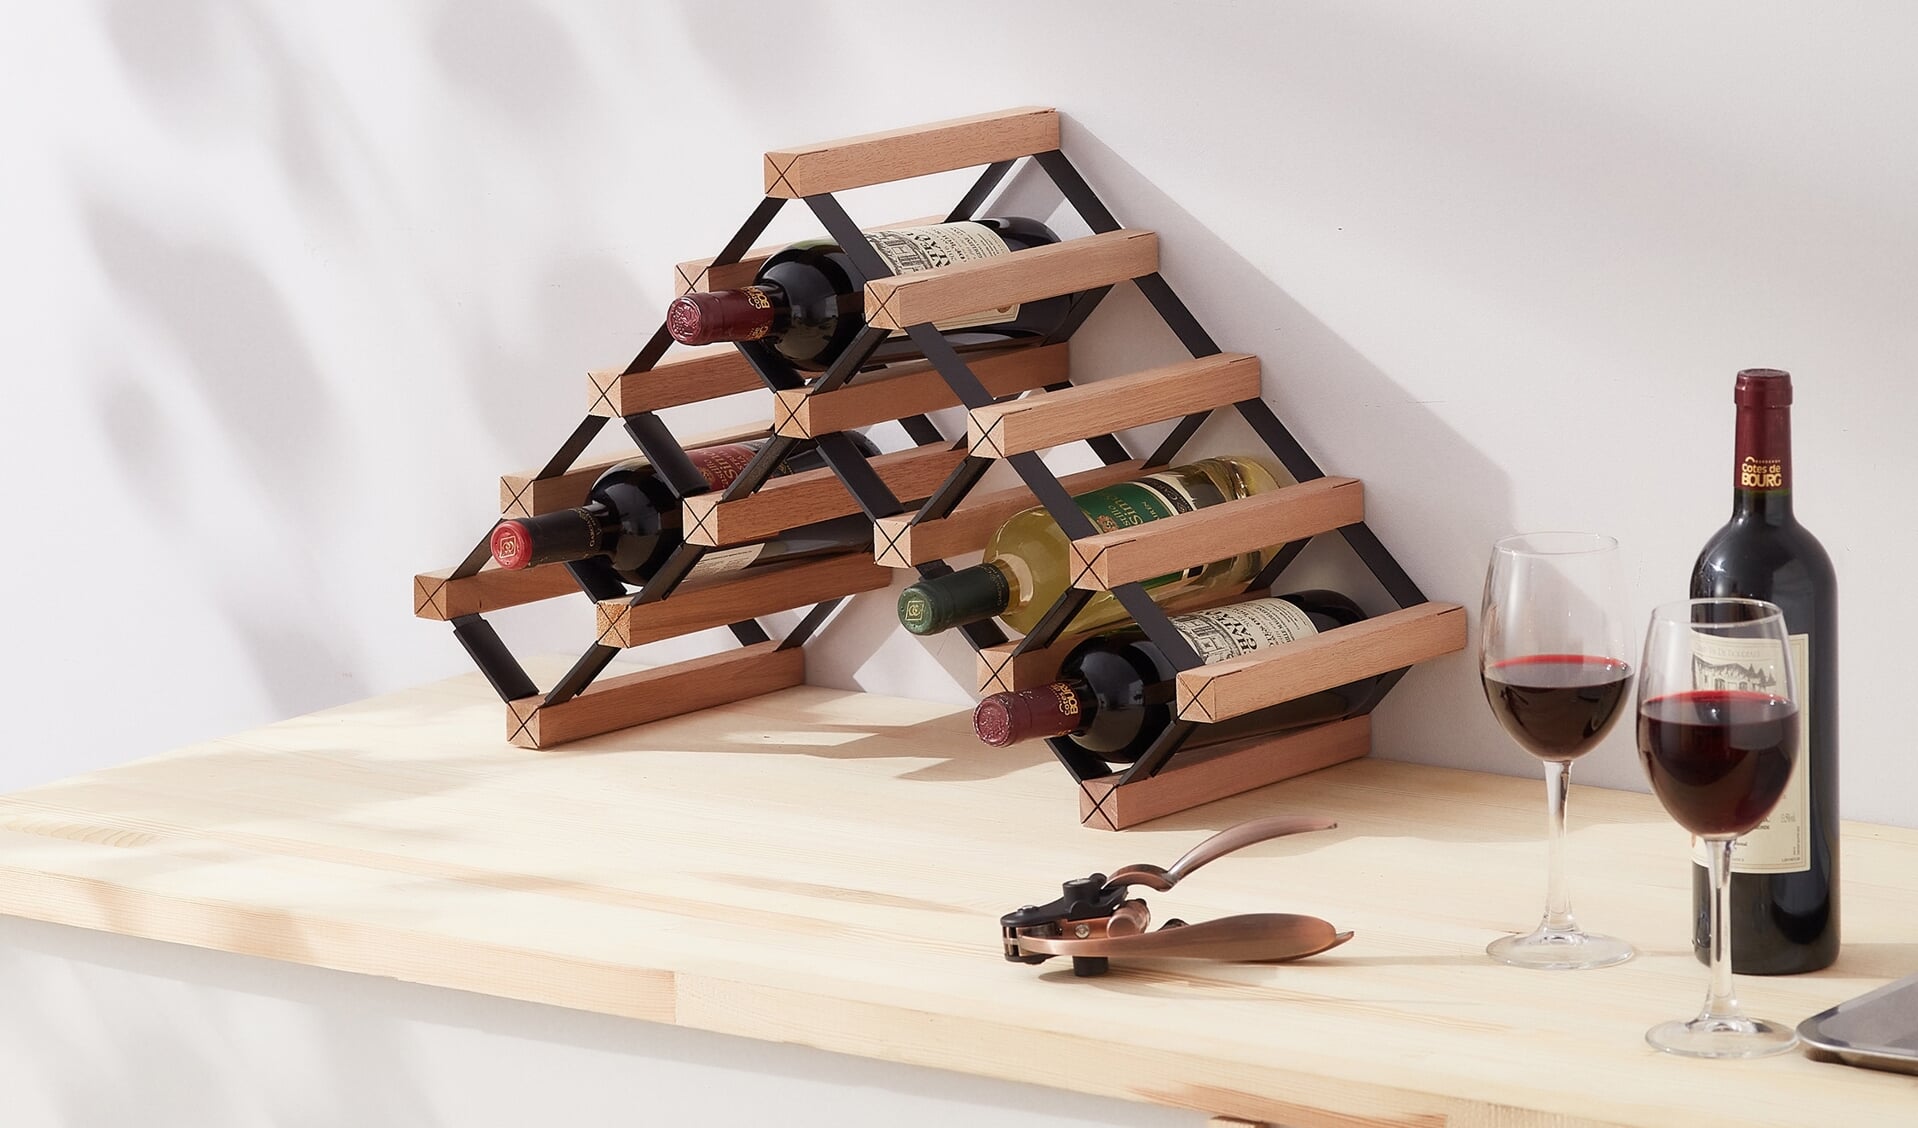 Tol applaus Leer DIY: maak je eigen wijnrek | Altijd op de hoogte van het laatste woonnieuws  uit jouw omgeving